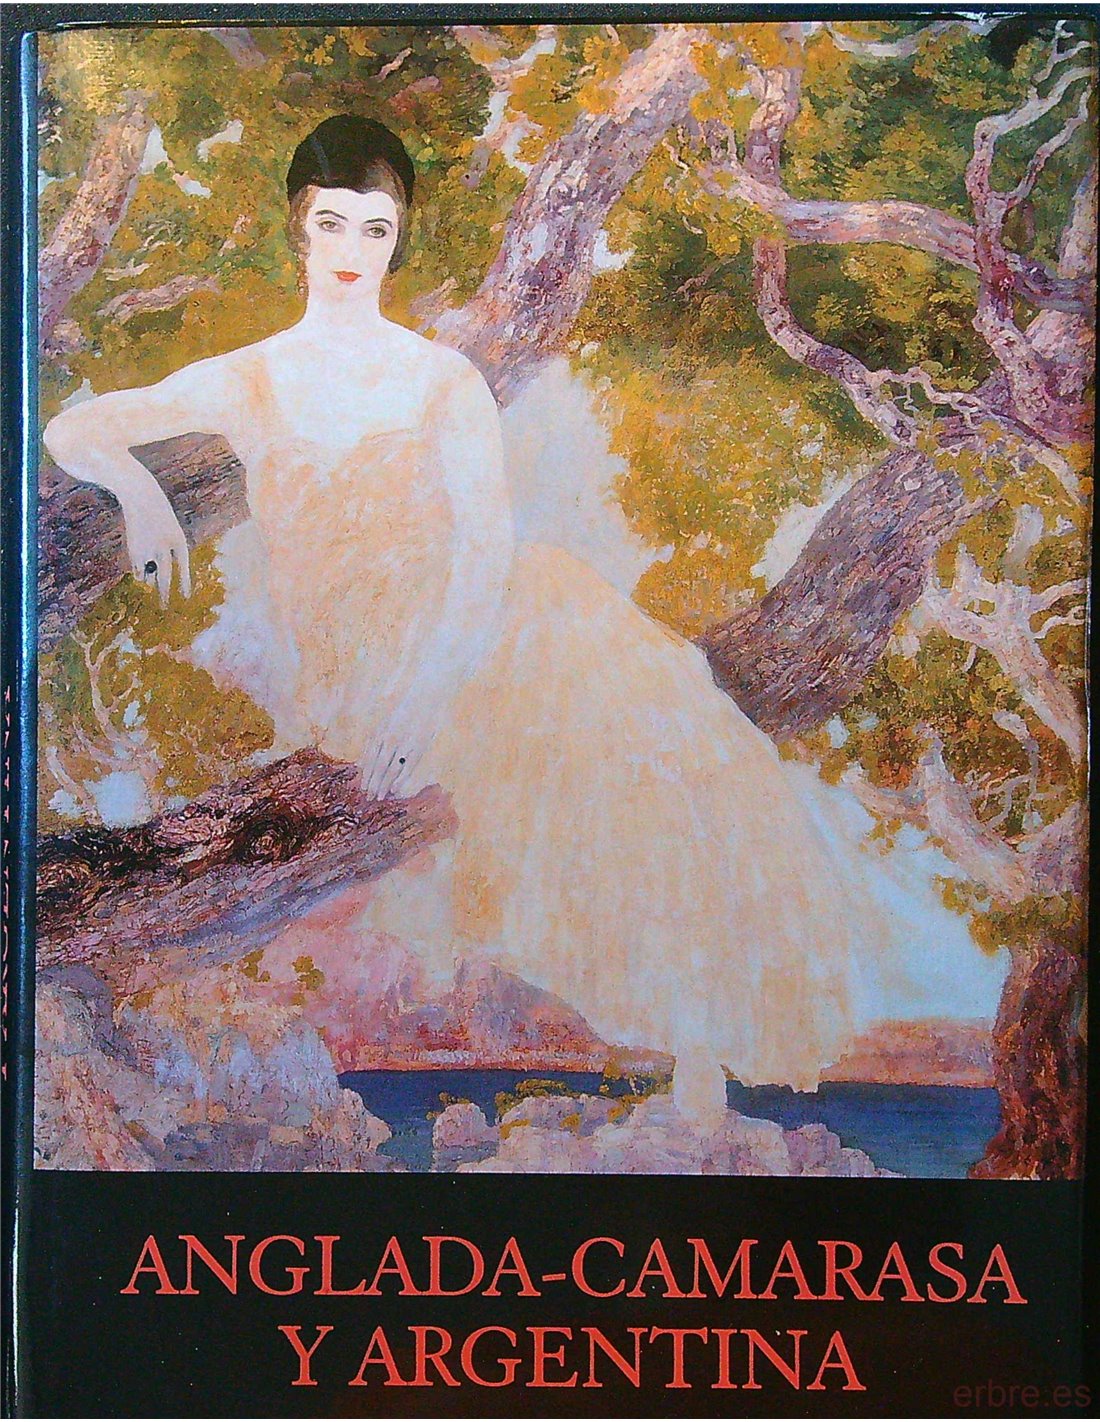 Imagen de portada del libro Anglada-Camarasa y Argentina